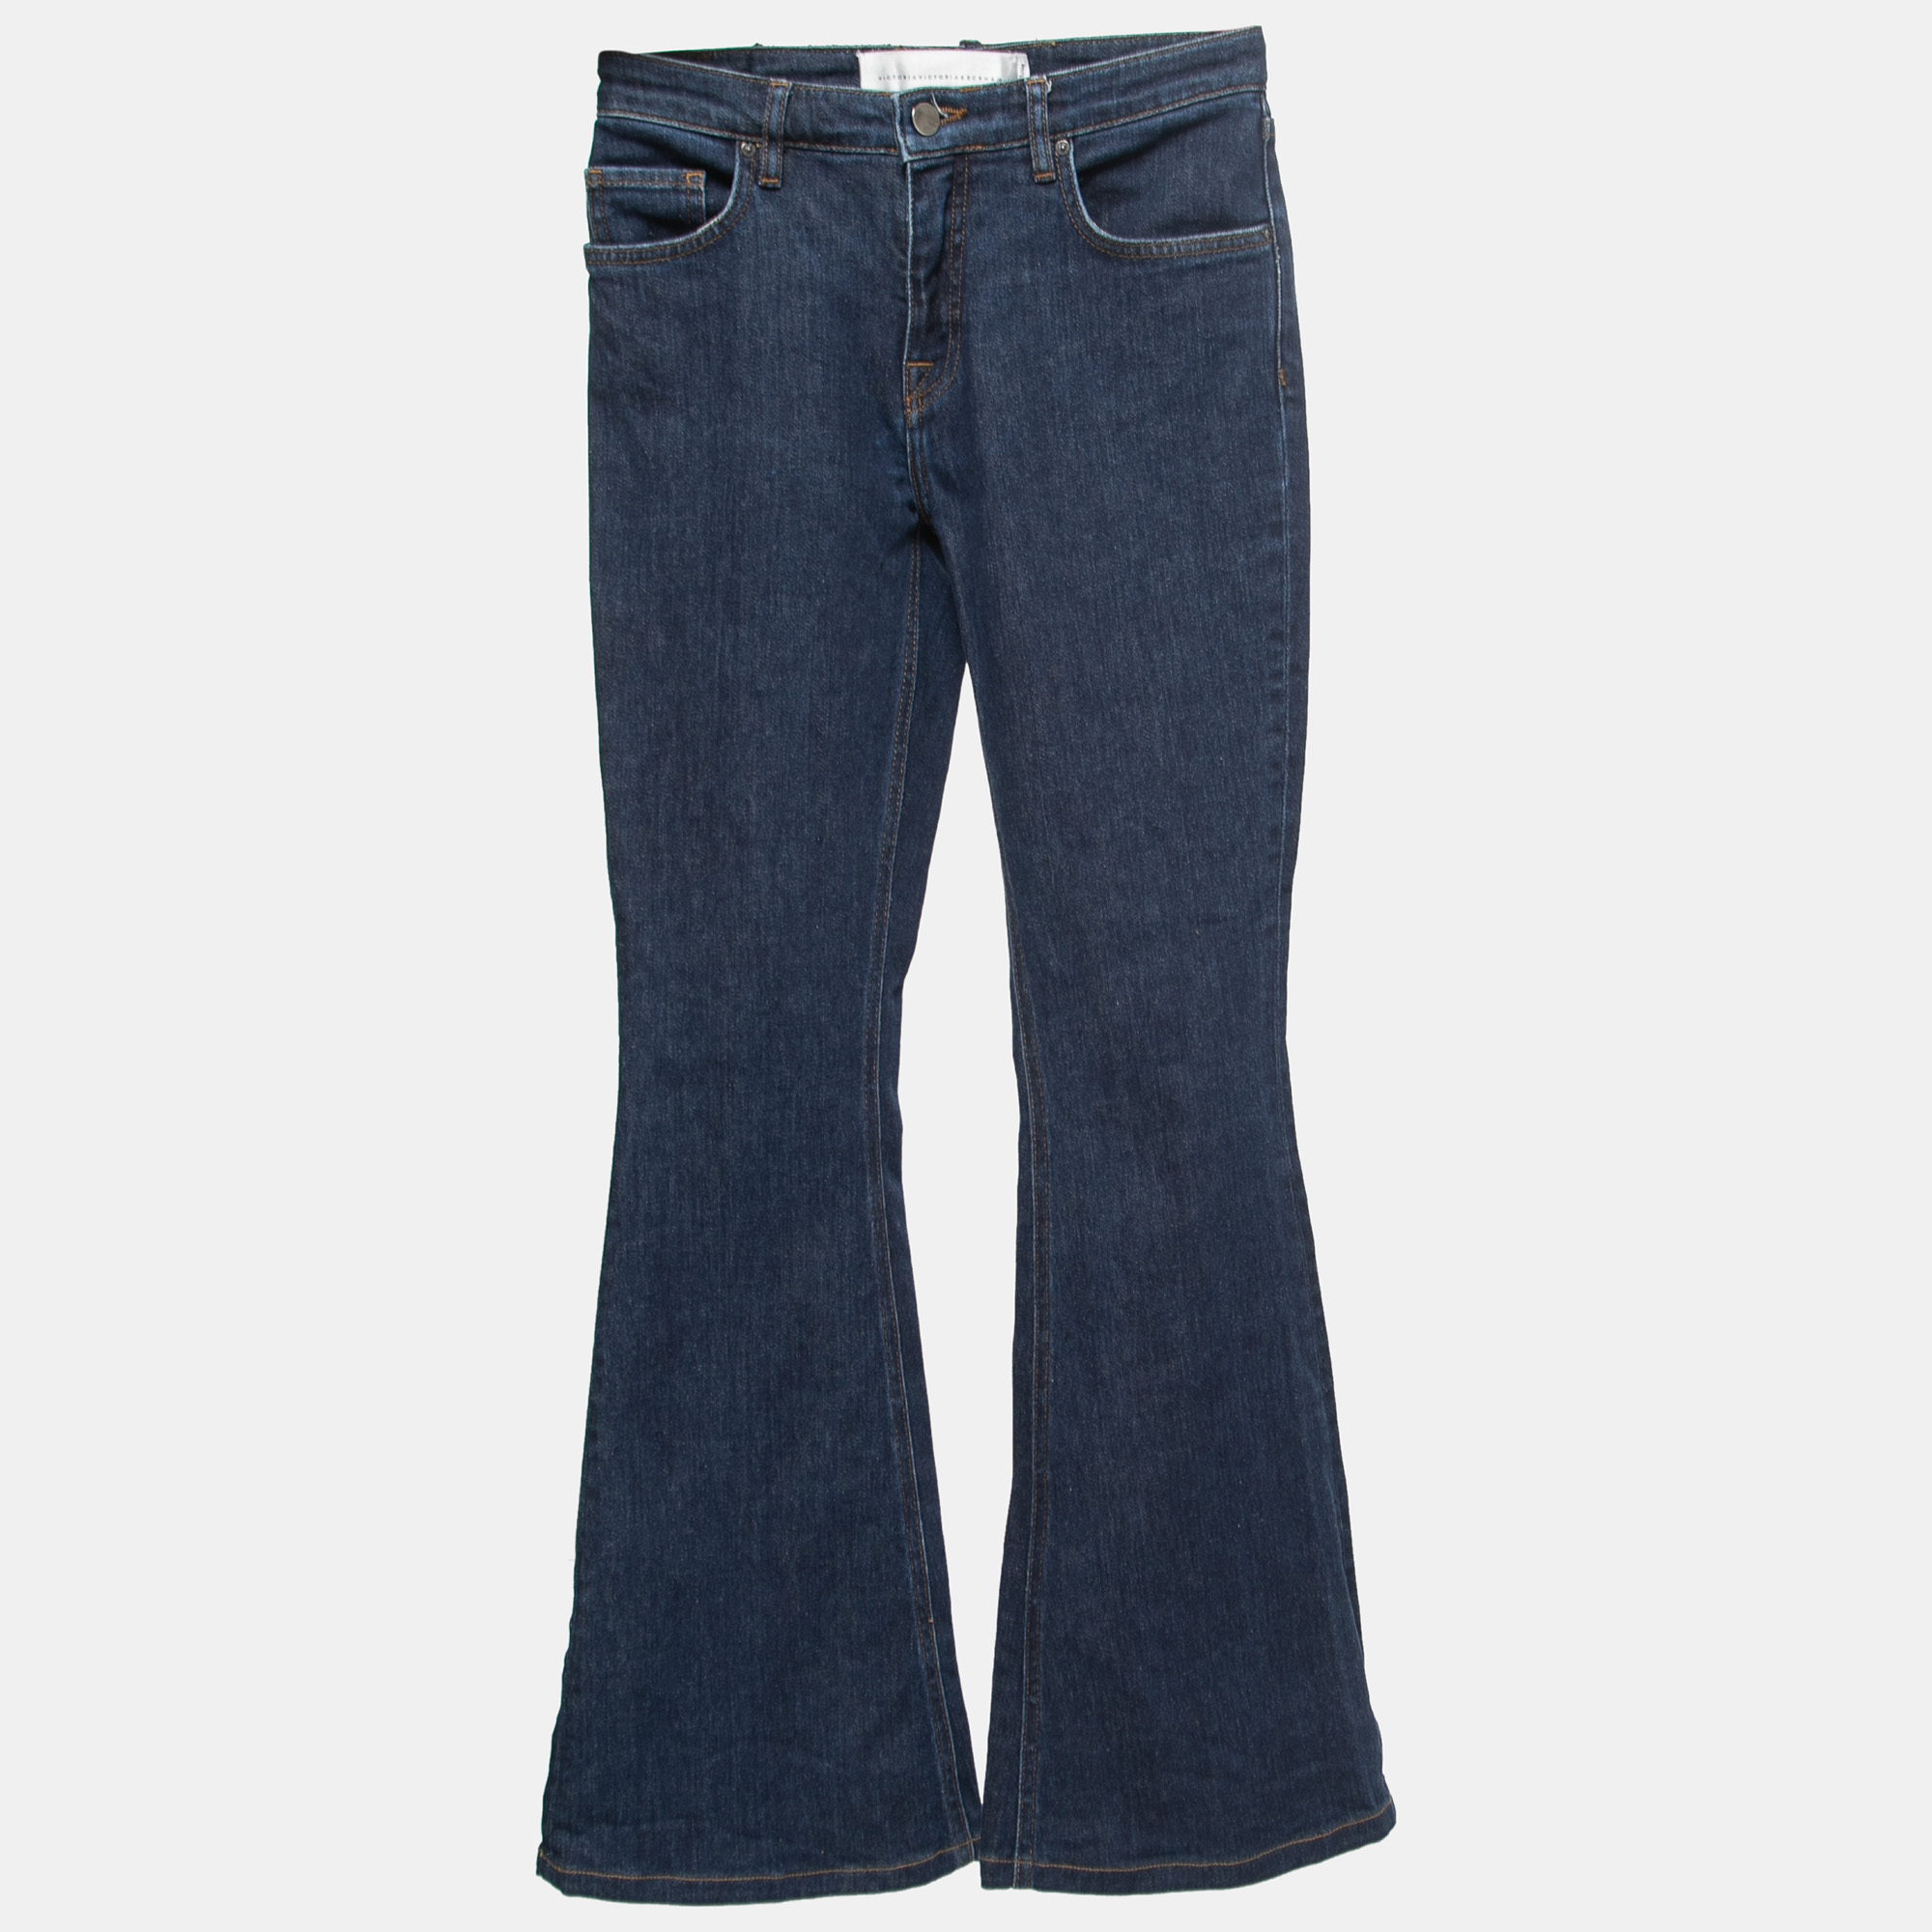 Victoria Victoria Beckham Blue Denim Flared Jeans S Waist 25